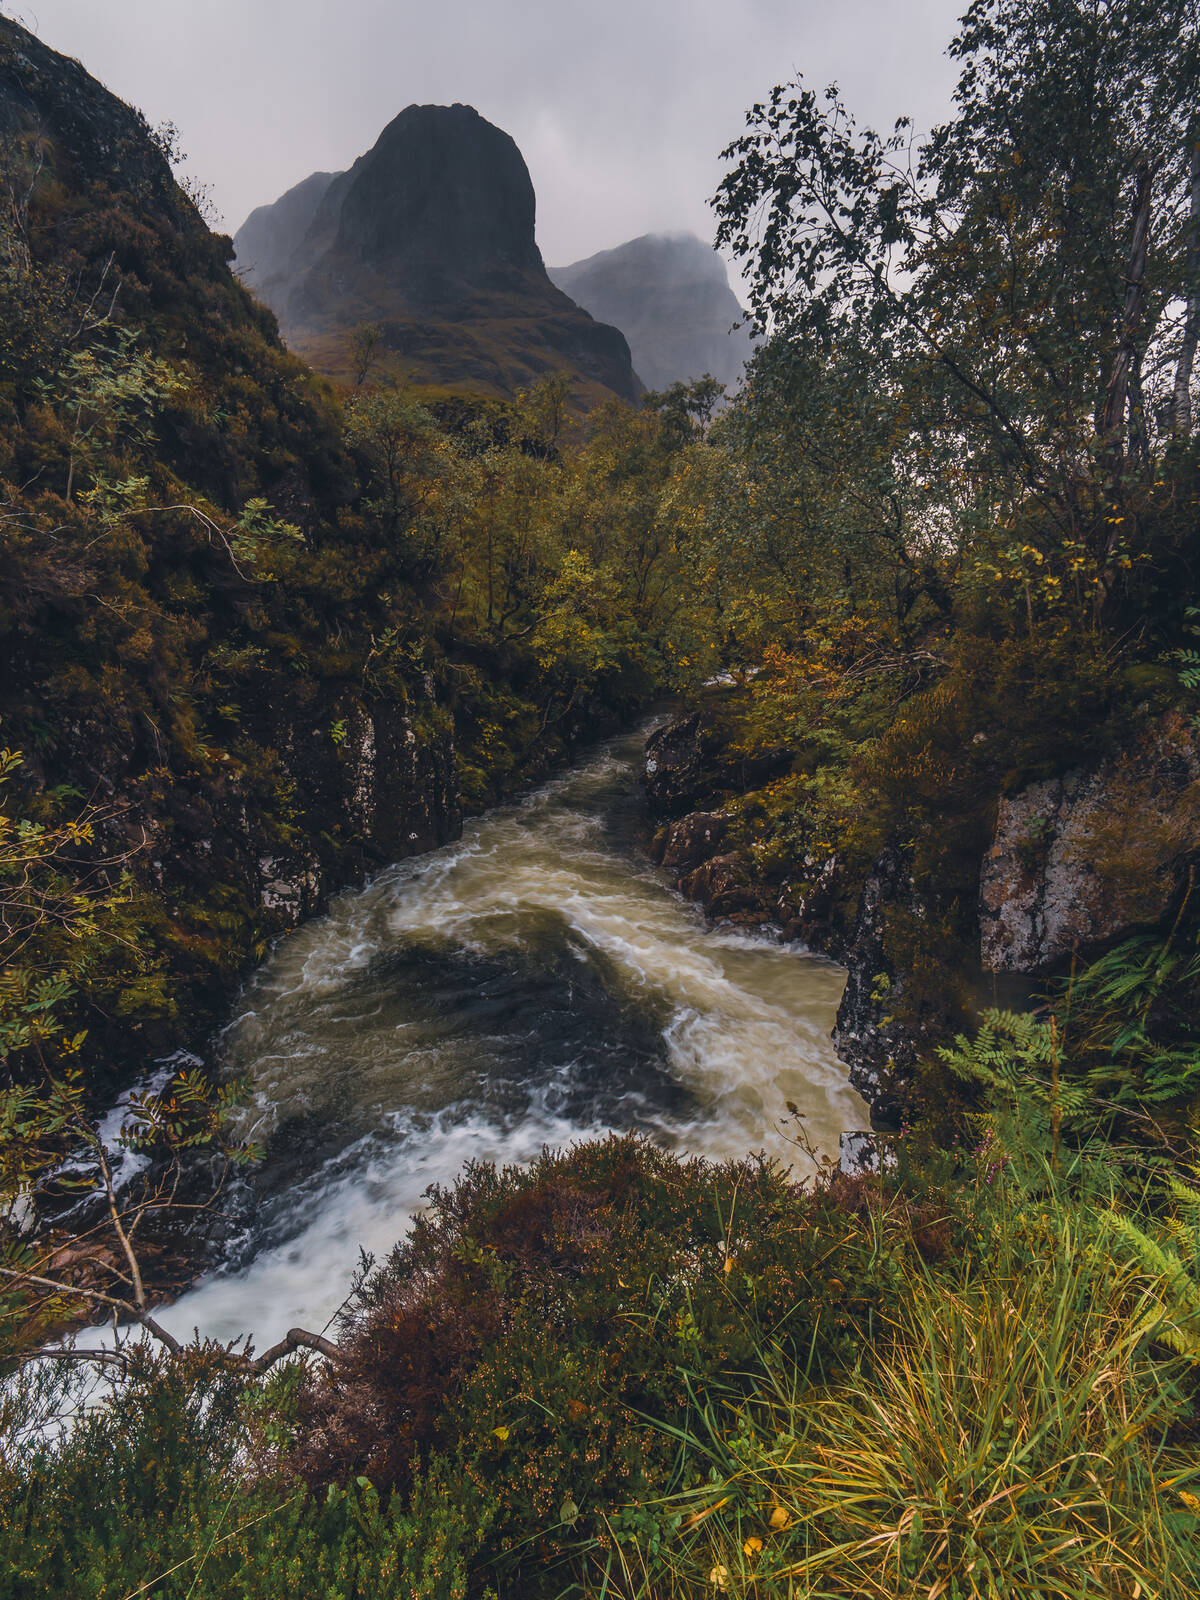 Image of Glen Coe S-bend Waterfall by James Billings.